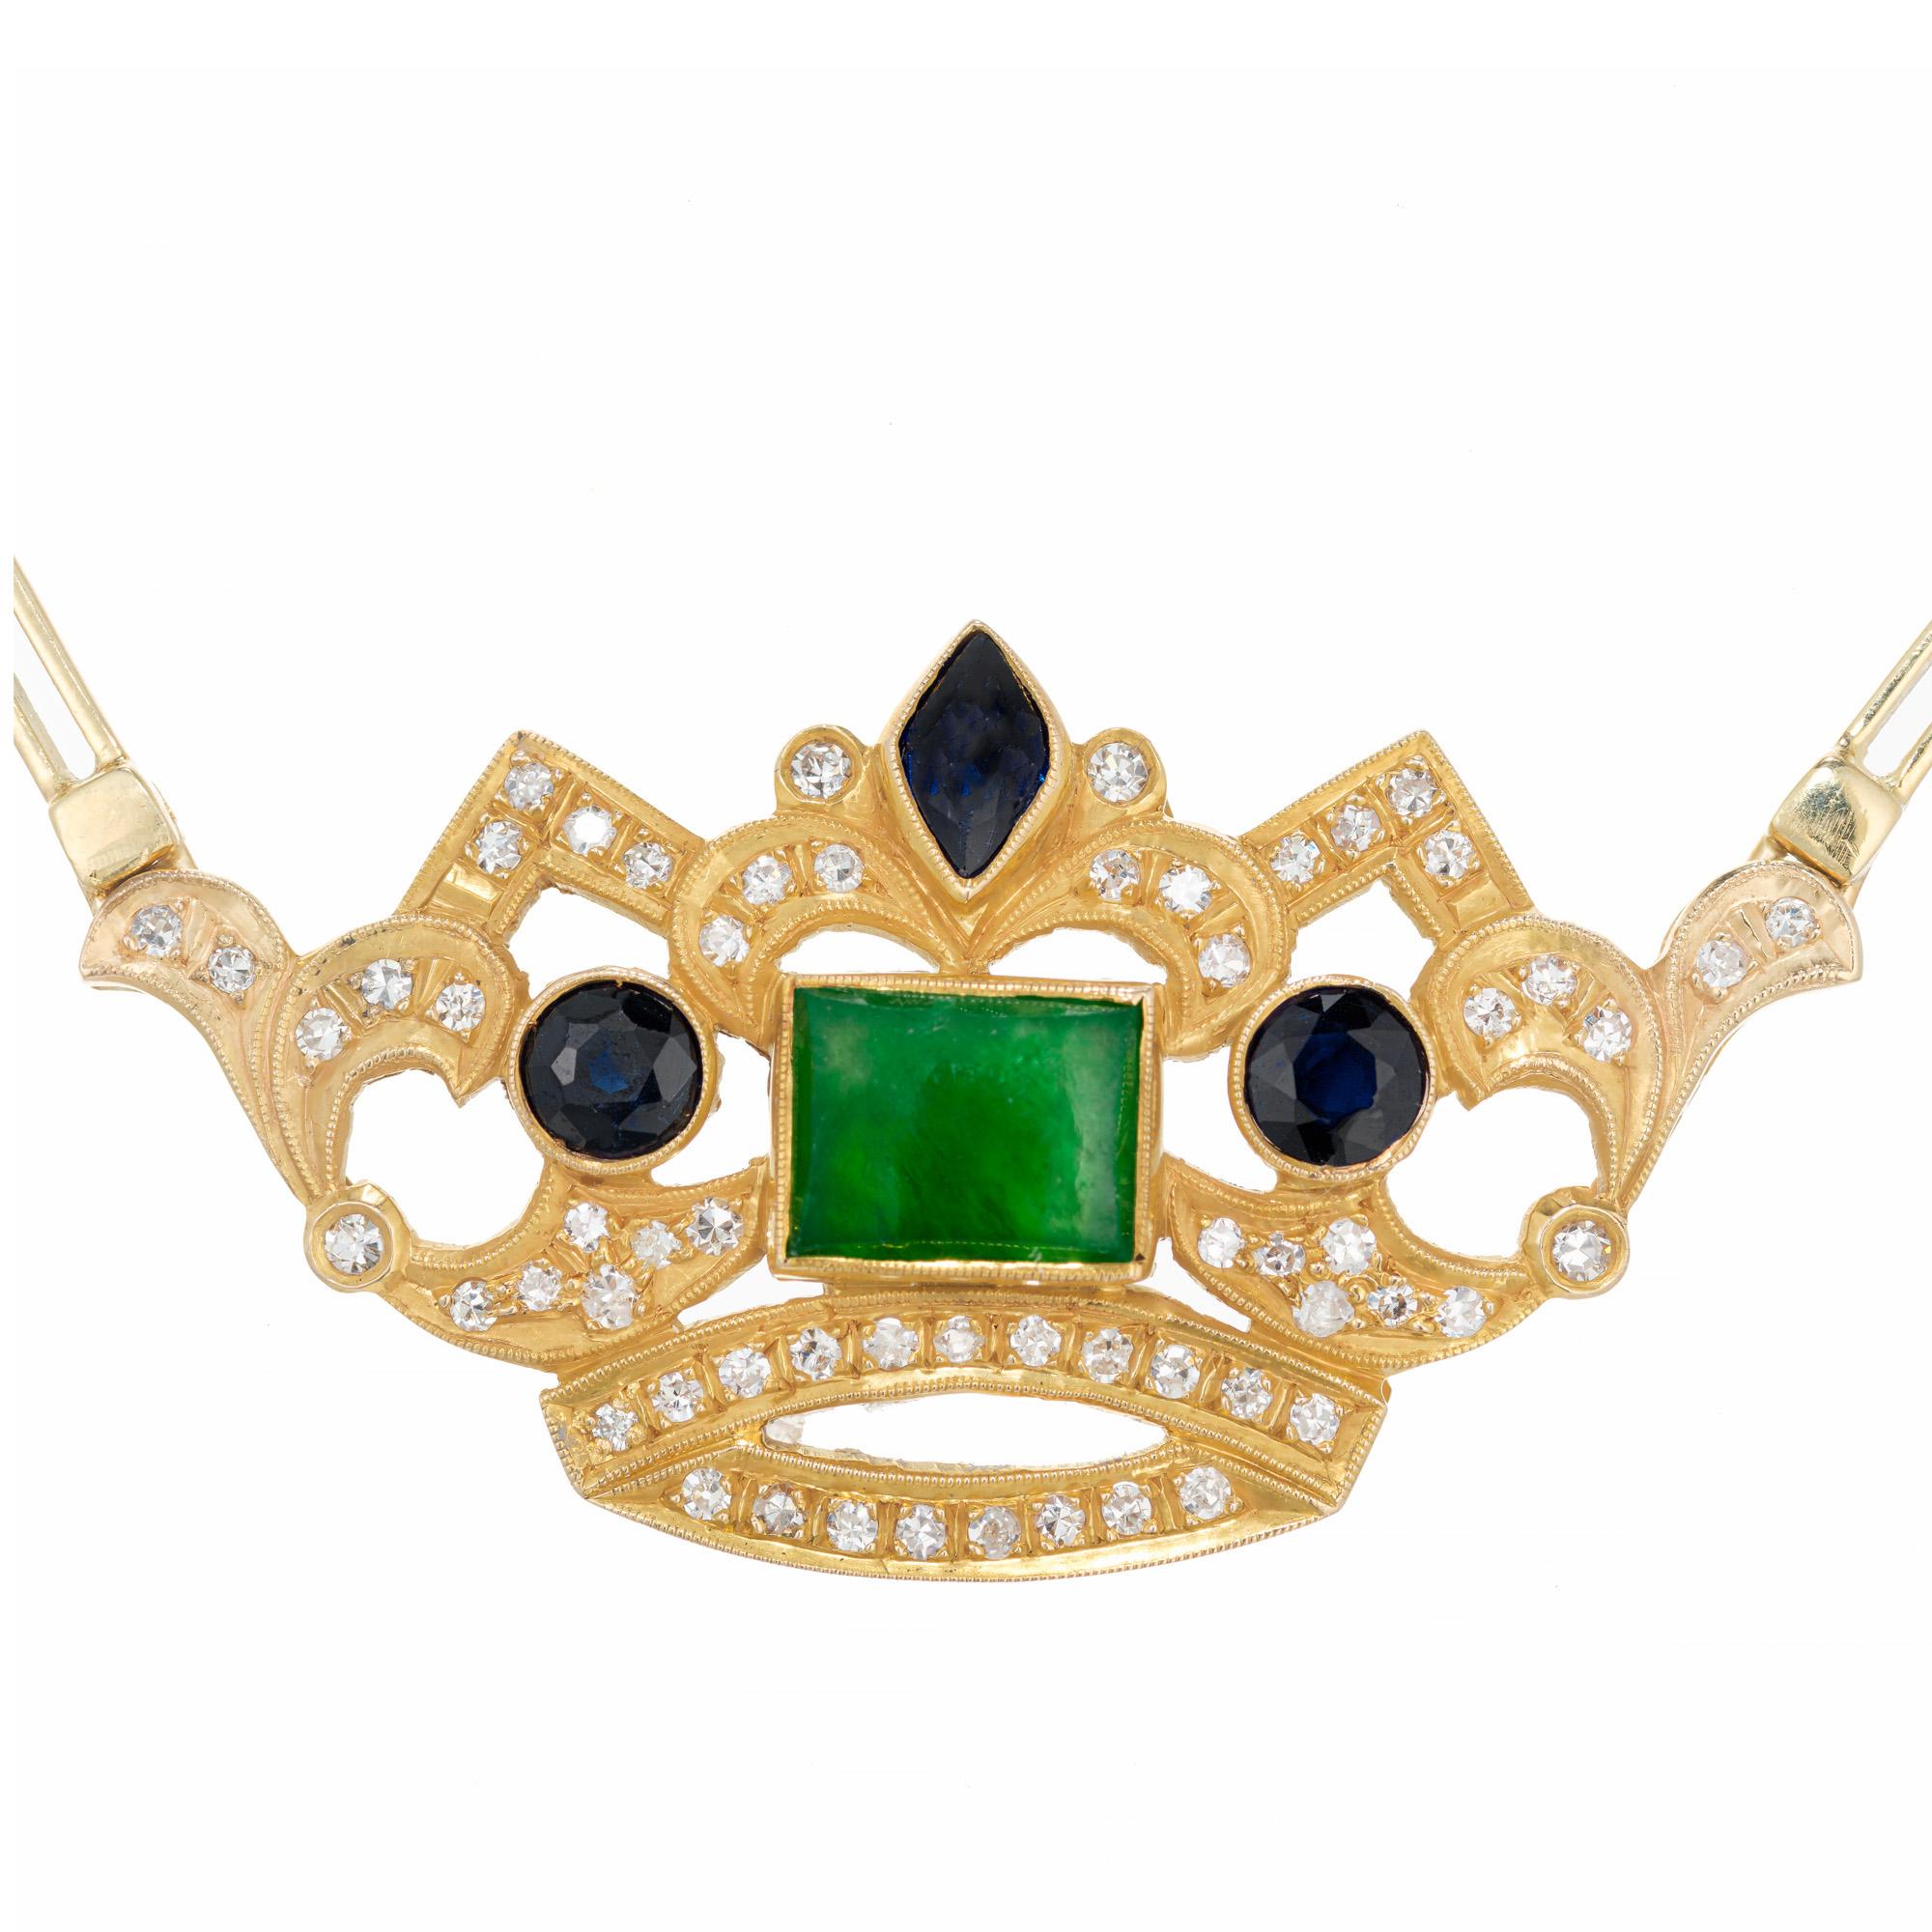 Vintage 1960's Jade, Saphir und Diamant Krone Anhänger Halskette. Die 18 Karat Gelbgold Krone hat einen GIA-zertifizierten natürlichen Jadeit Jade rechteckigen Mittelstein, der als unbehandelt zertifiziert ist. Ein GIA-zertifizierter Saphir im